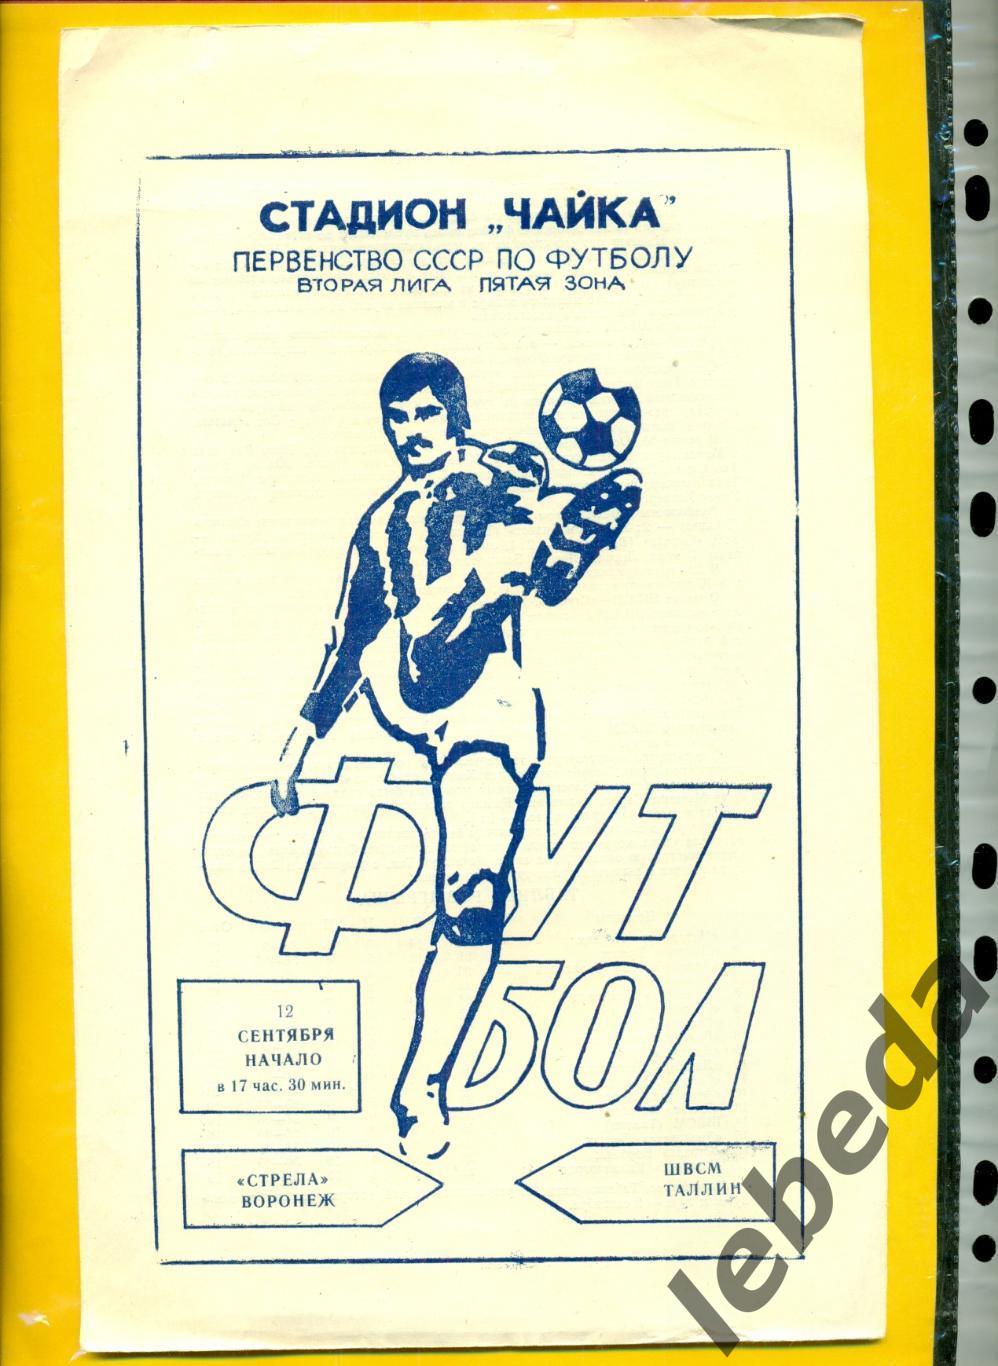 Стрела Воронеж - ШВСМ Таллин - 1983 год. (12.09.83.)